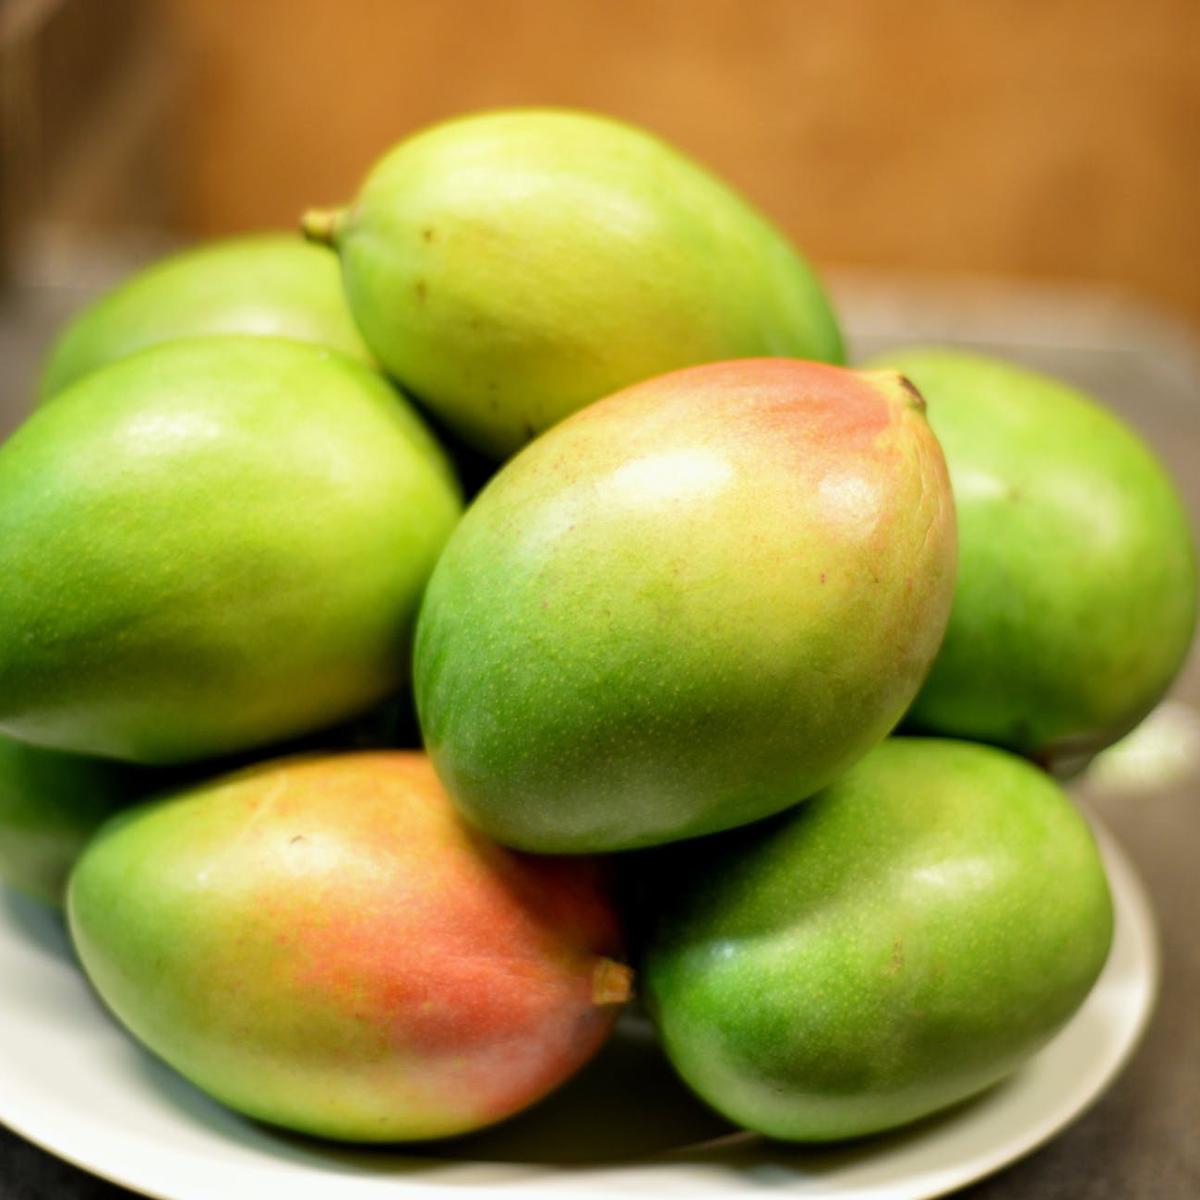 Yang zat buah antioksidan disebut mangga mengandung 20 Buah